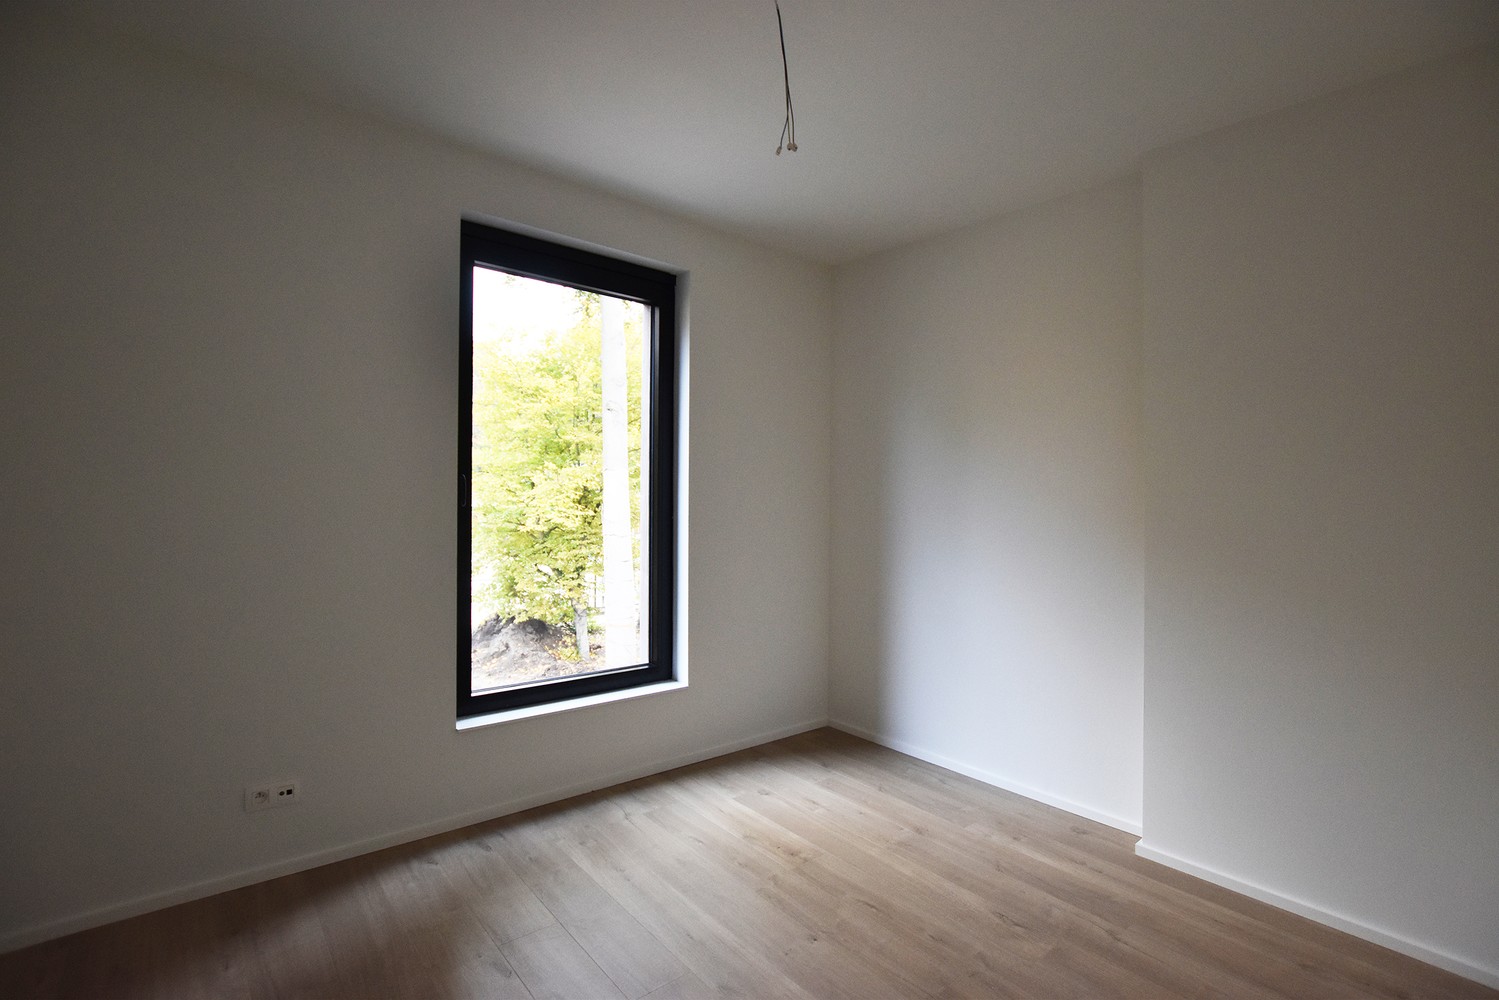 Stijlvol afgewerkt appartement met 2 slaapkamers, terras & garagebox in Wijnegem! afbeelding 8